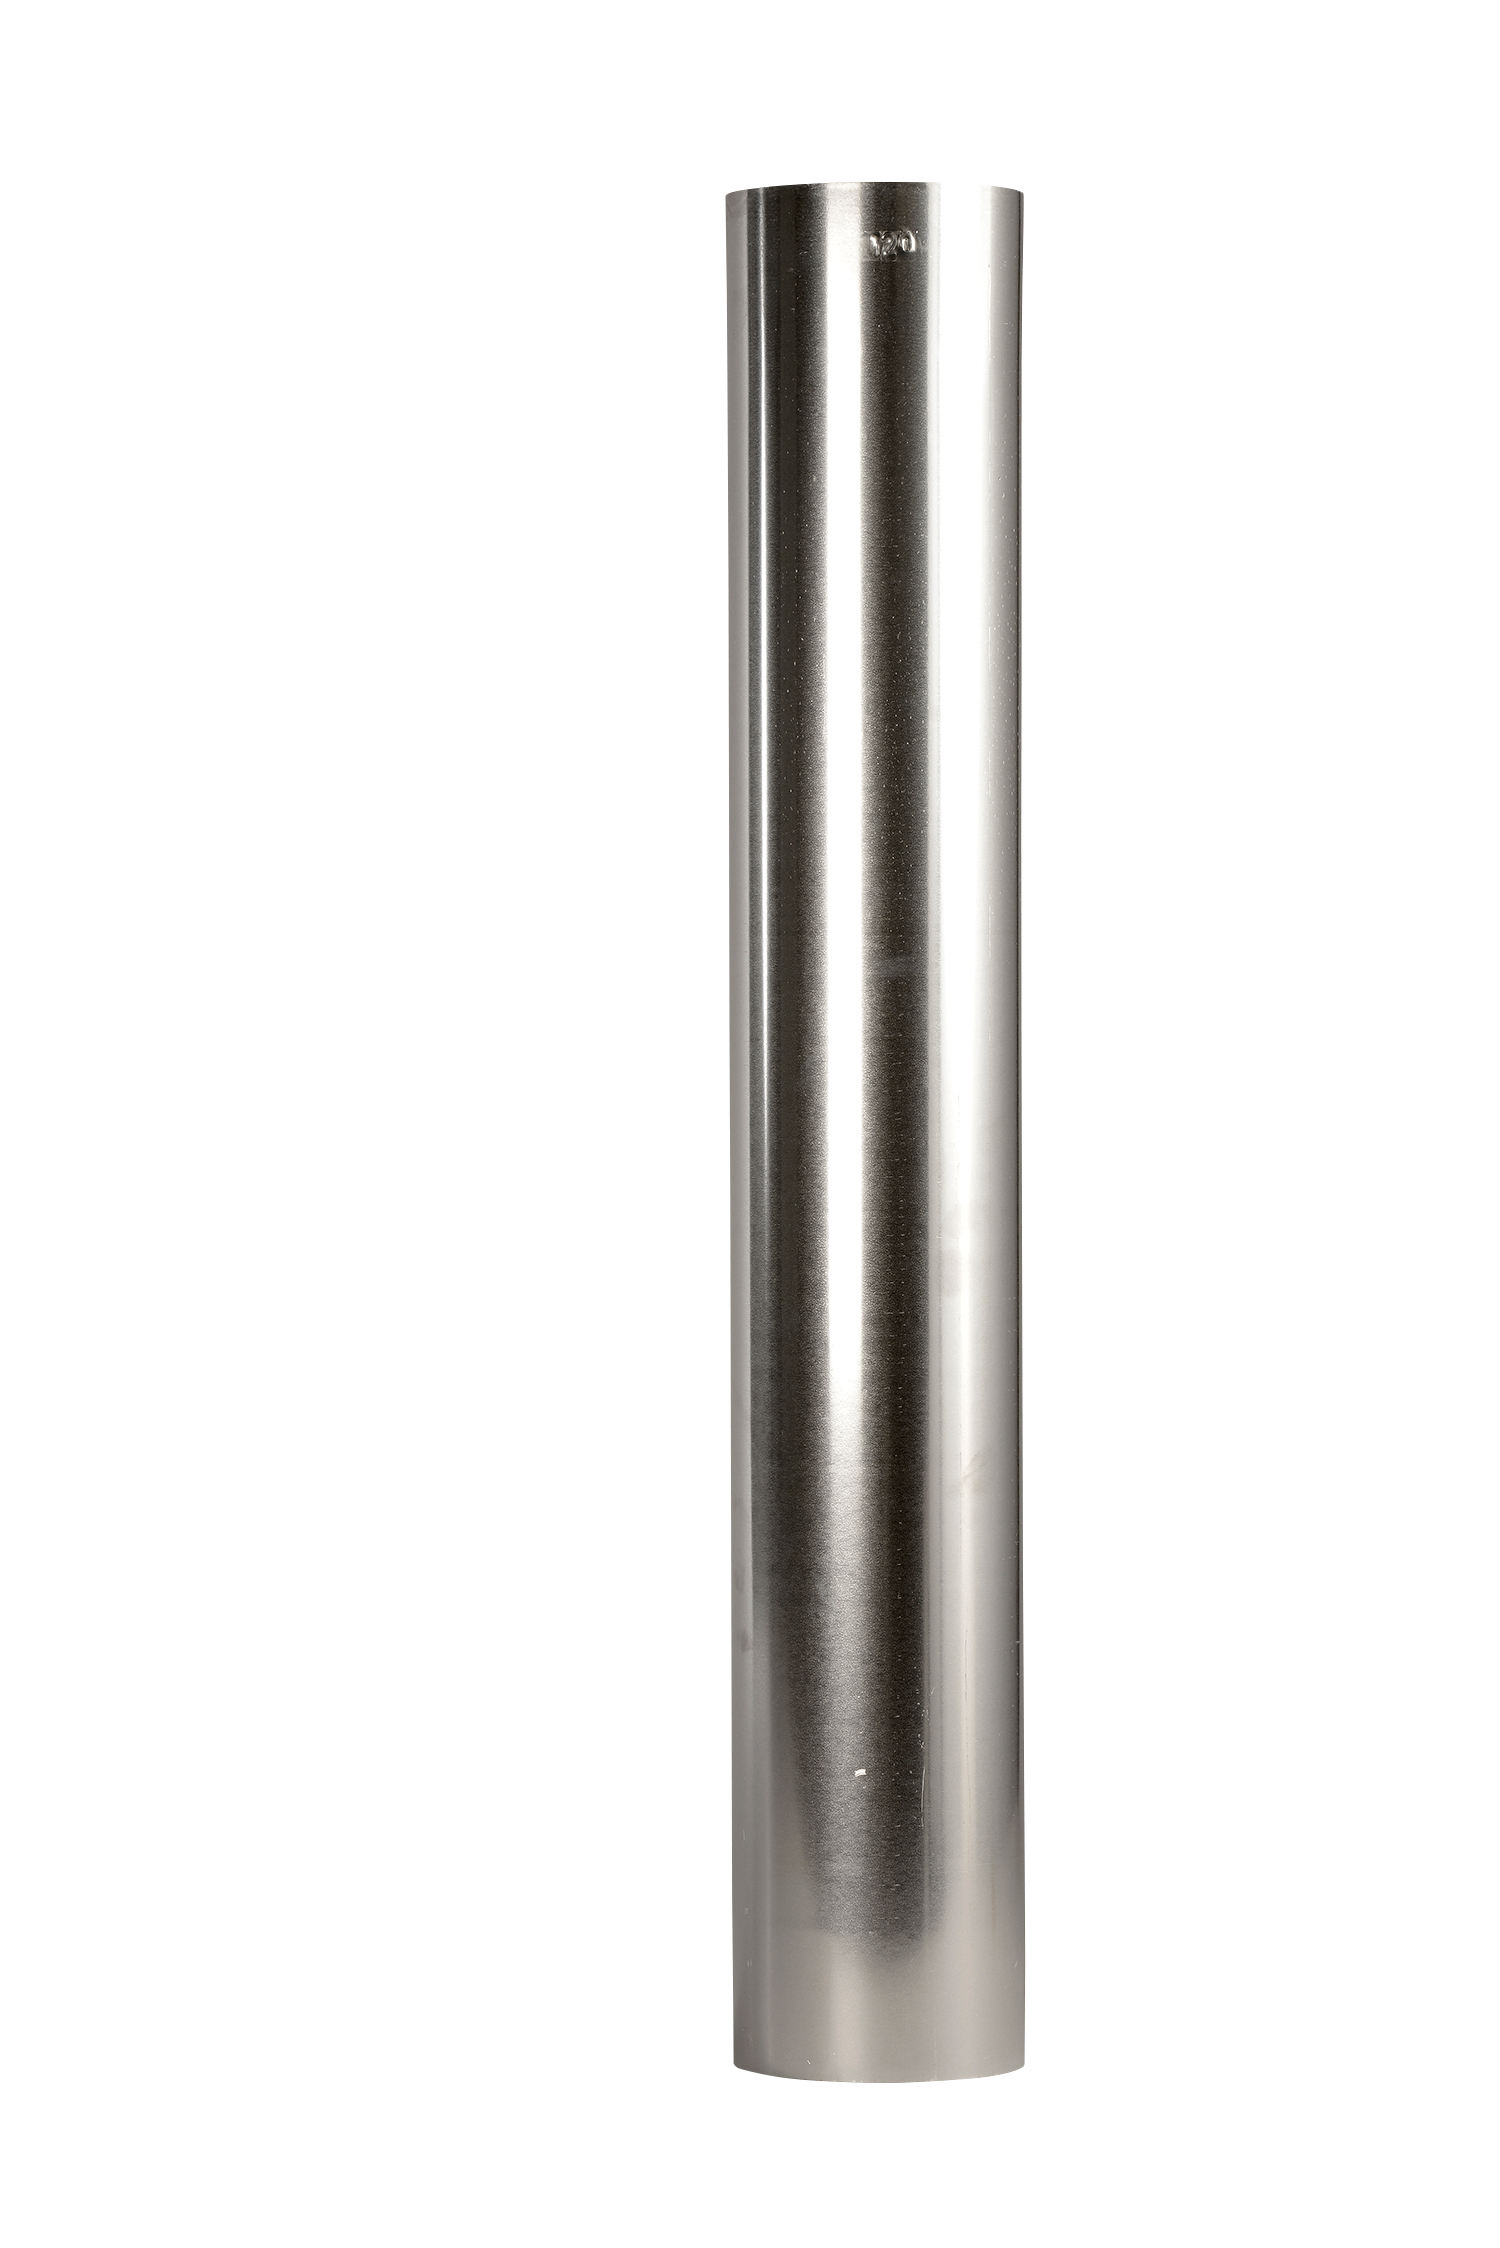 Rohr FAL 100cm, Ø 60 - 200 mm